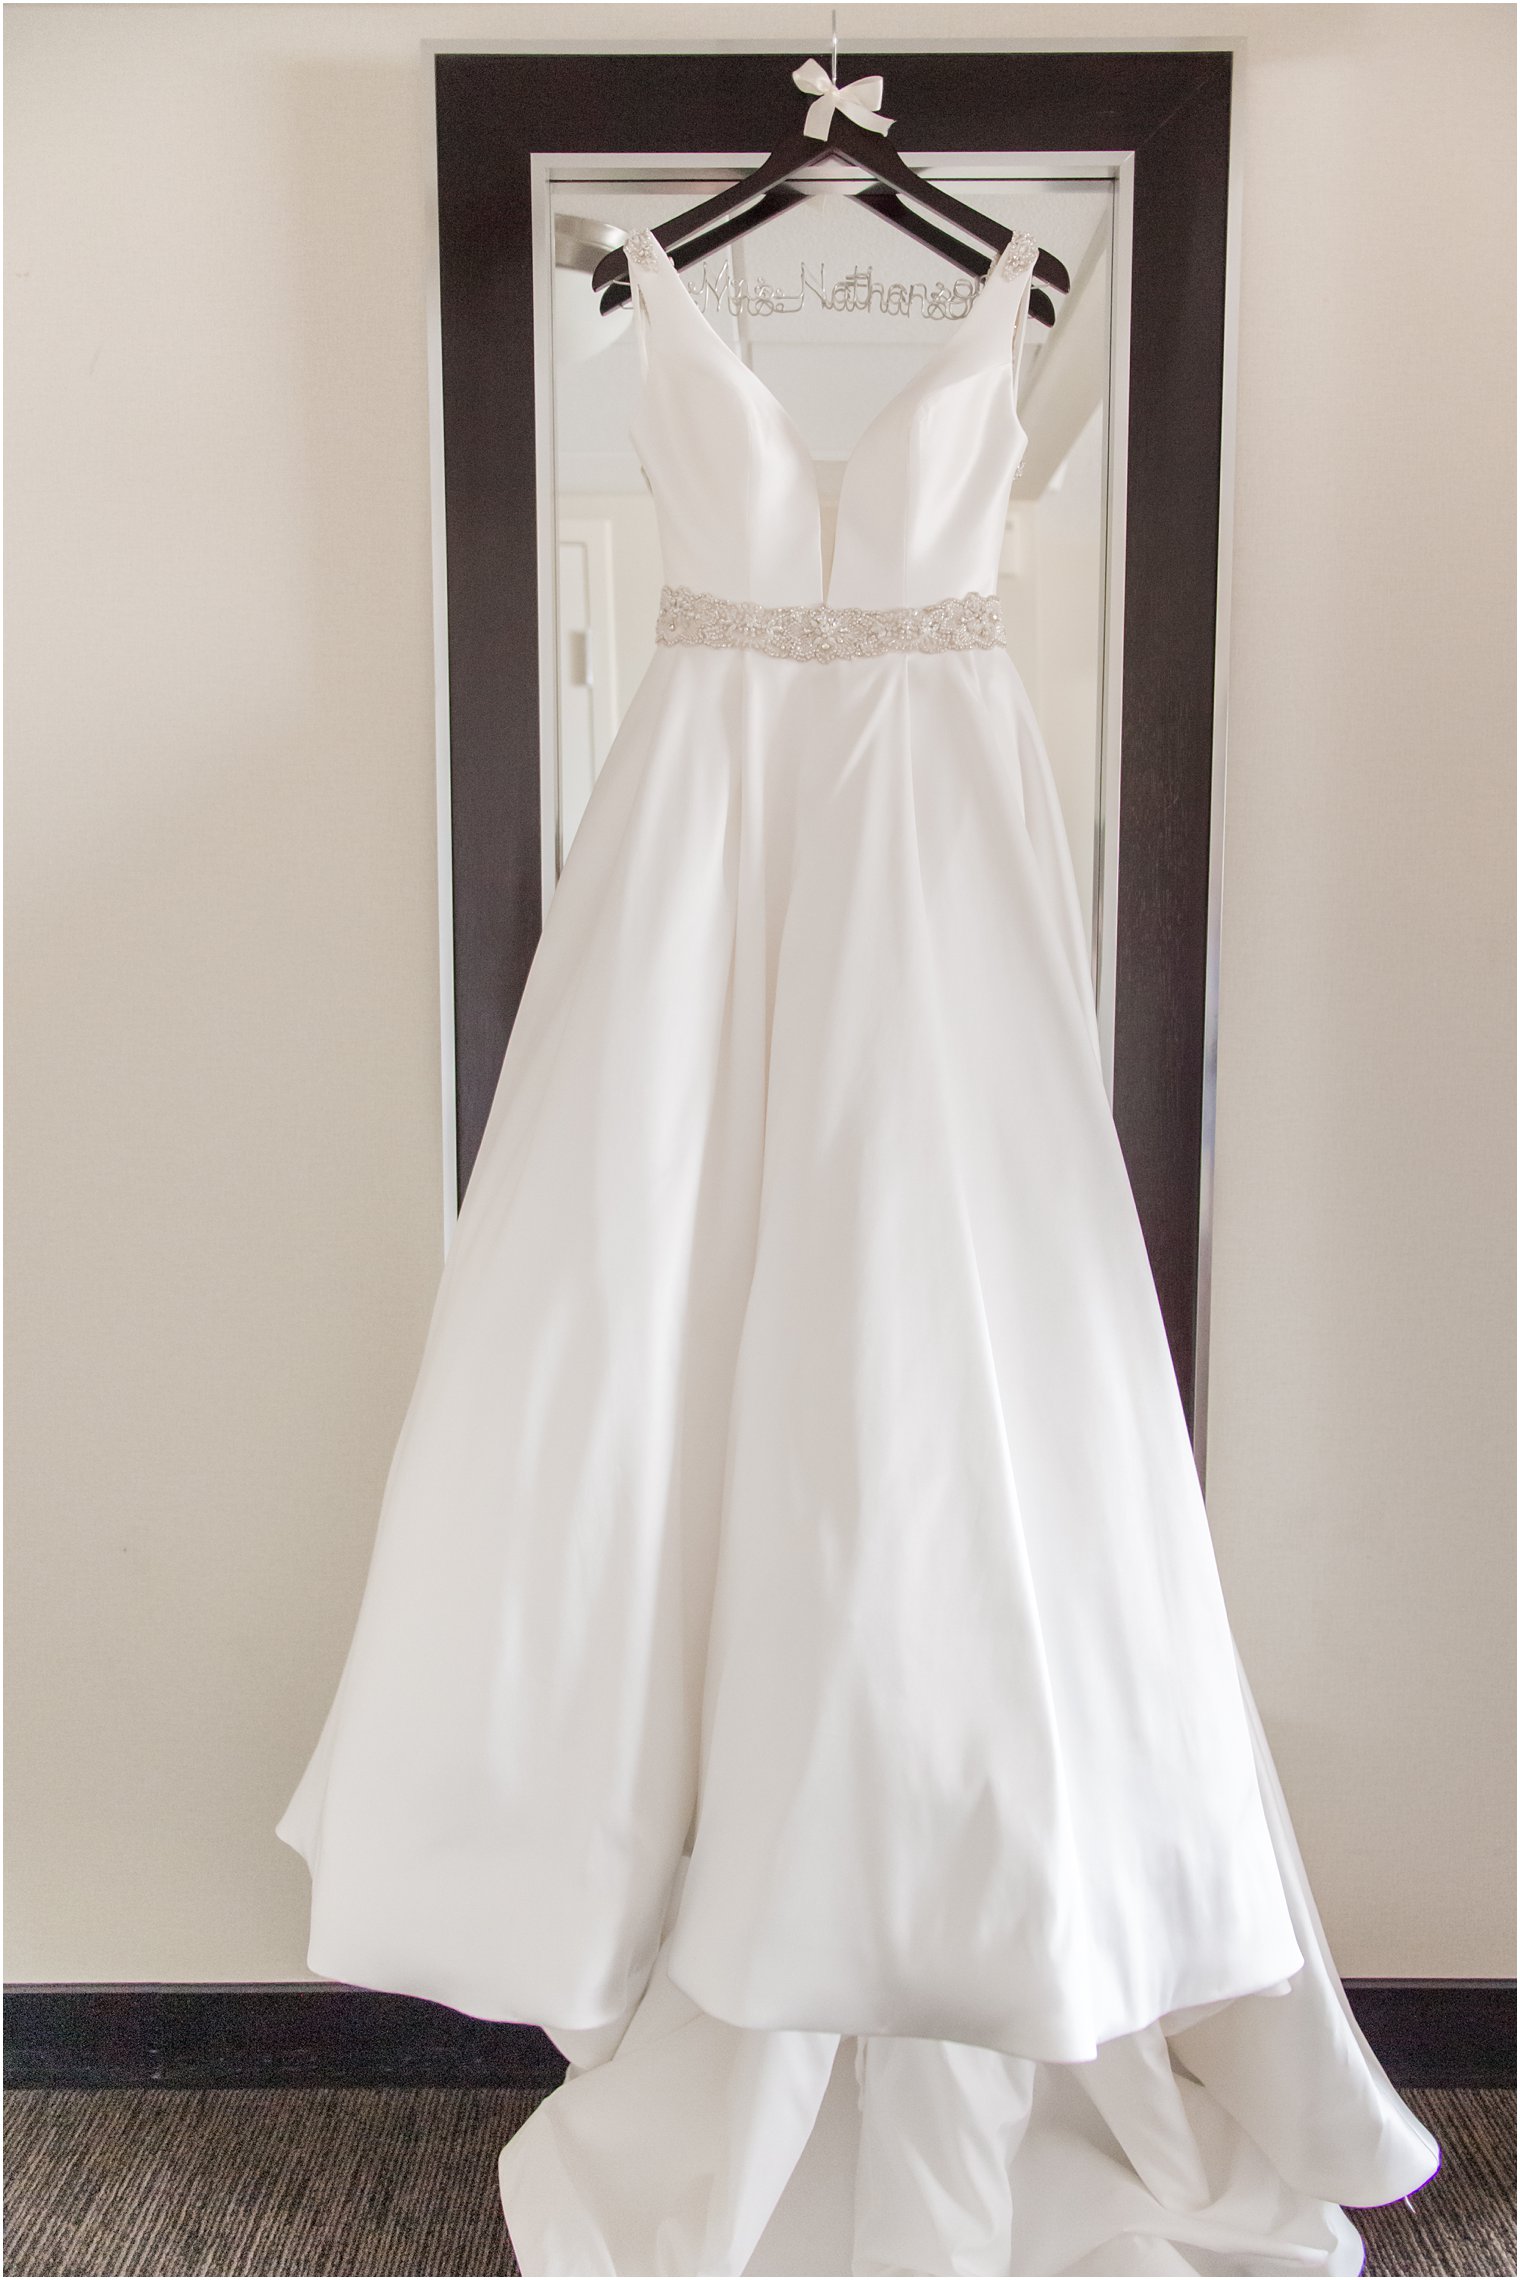 wedding gown hangs on mirror before NJ wedding